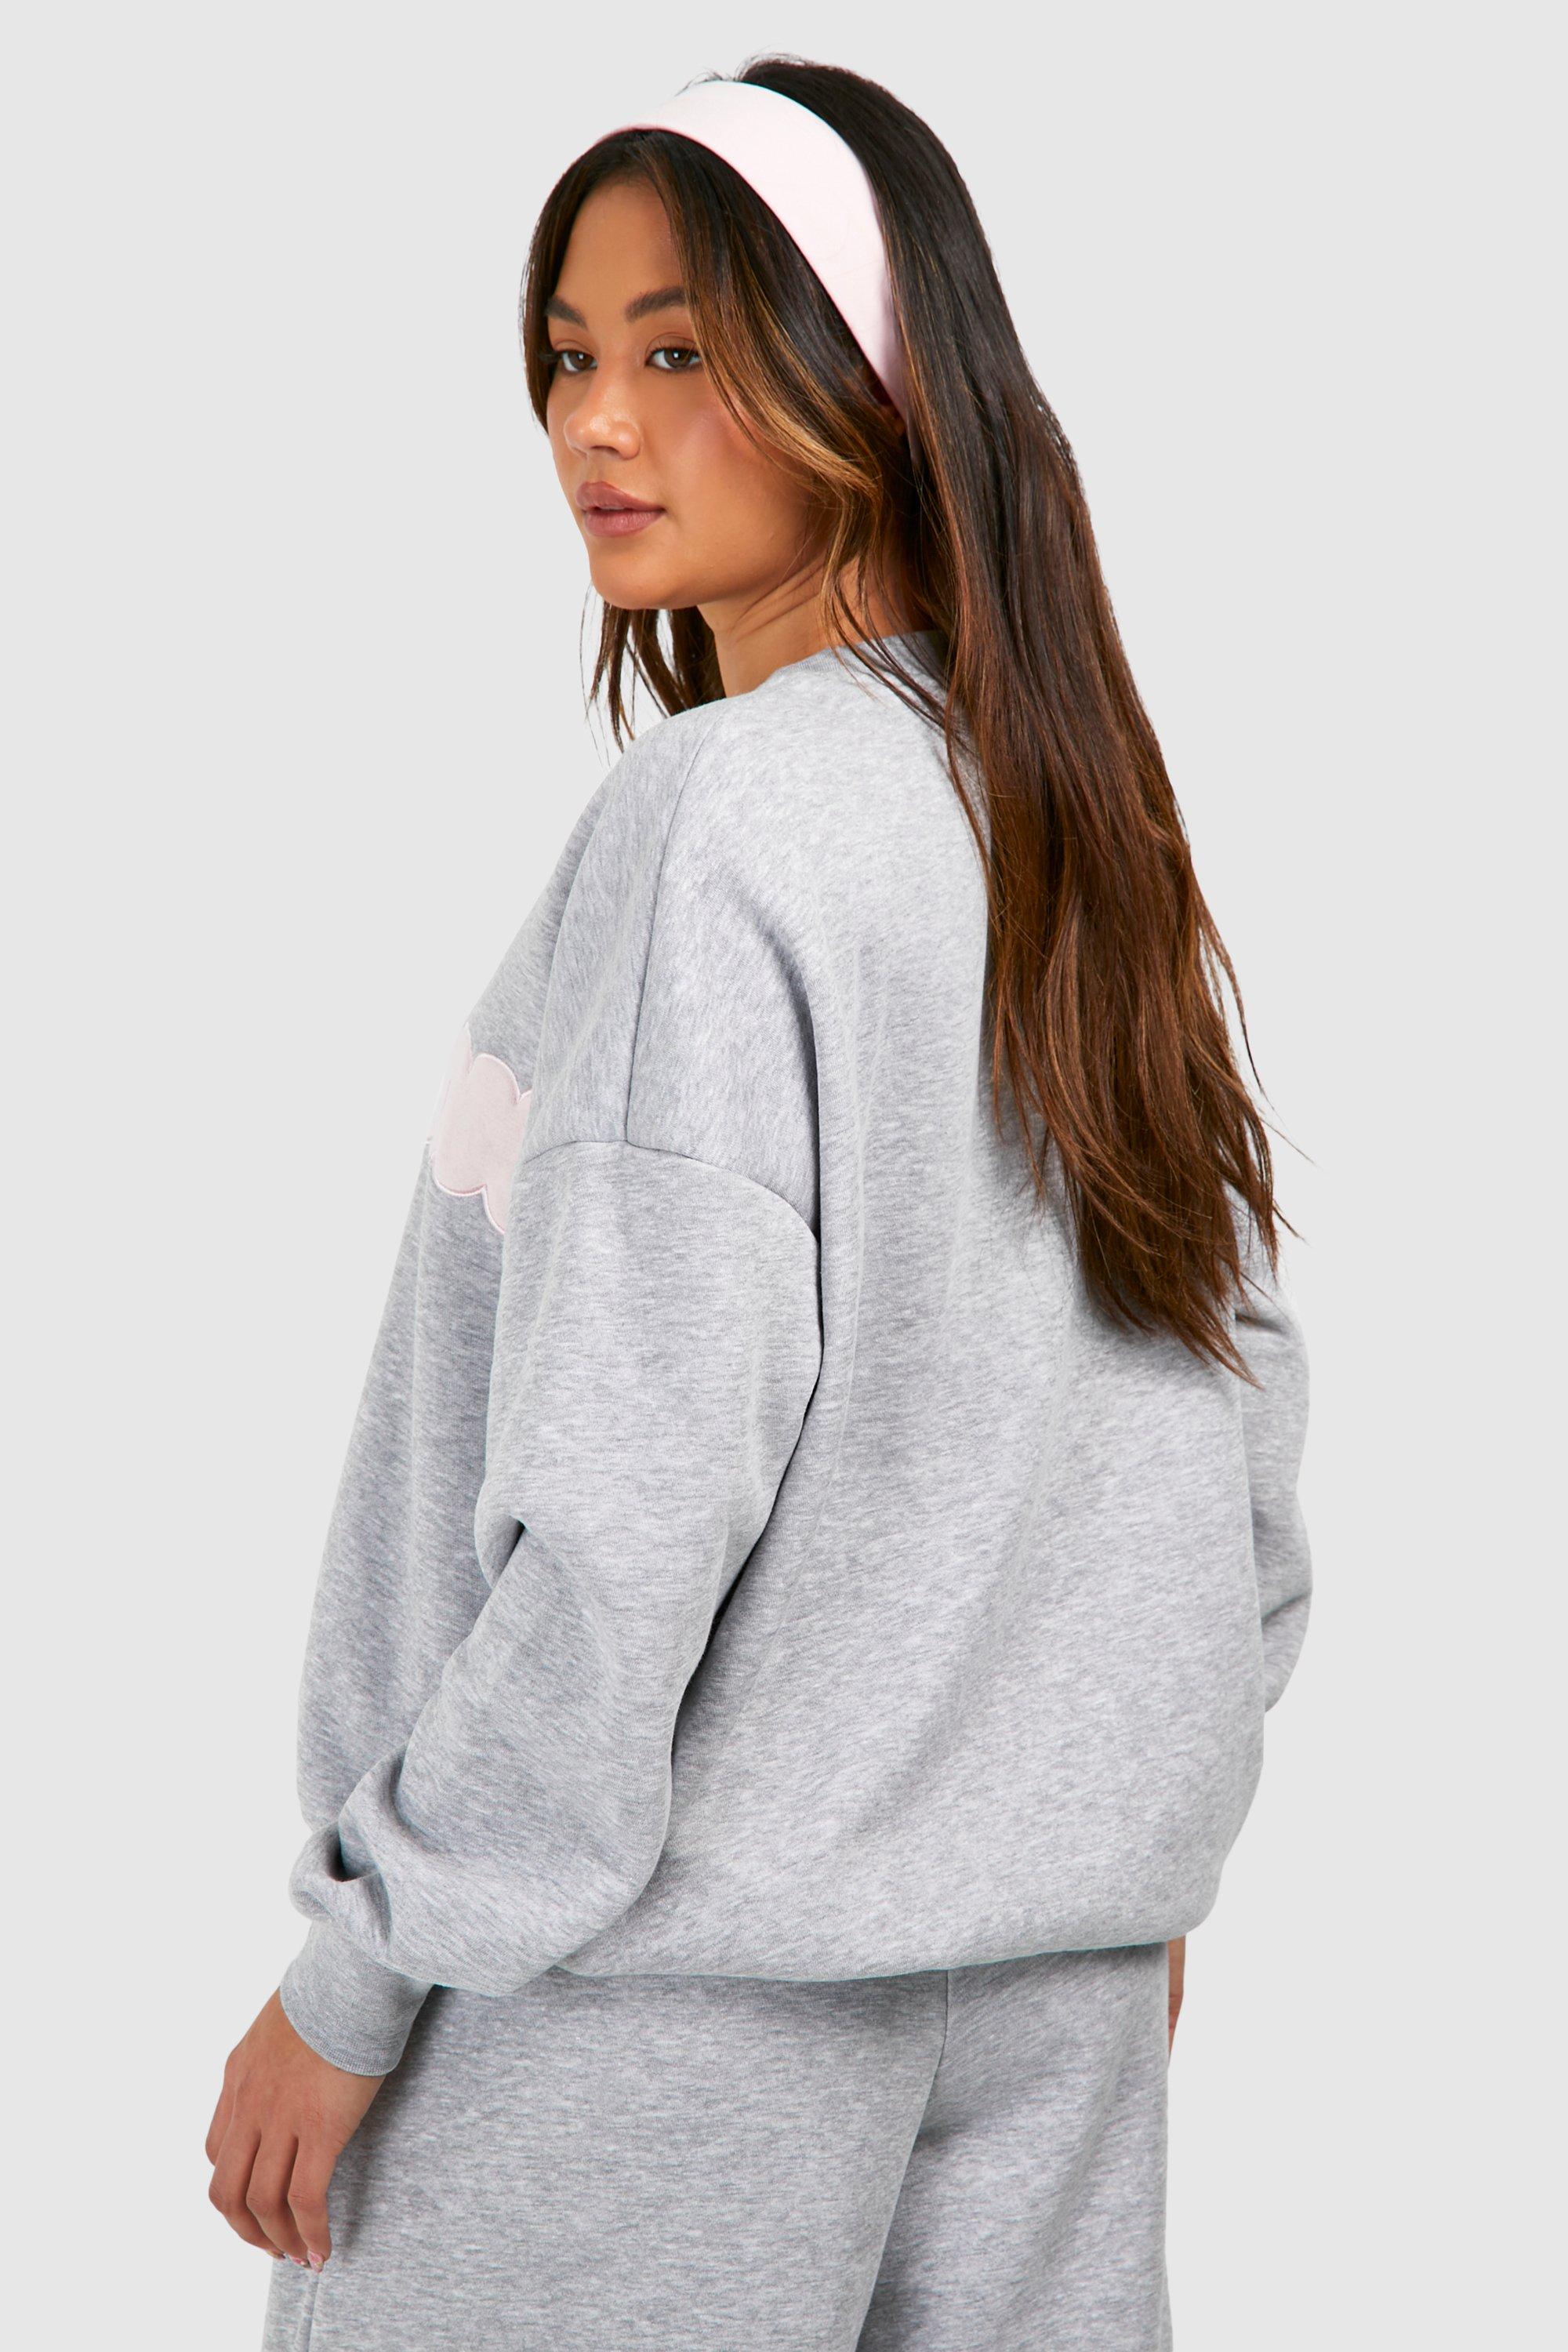 Dsgn Studio Applique Oversized Sweatshirt For Women-Bho-2381-Grey